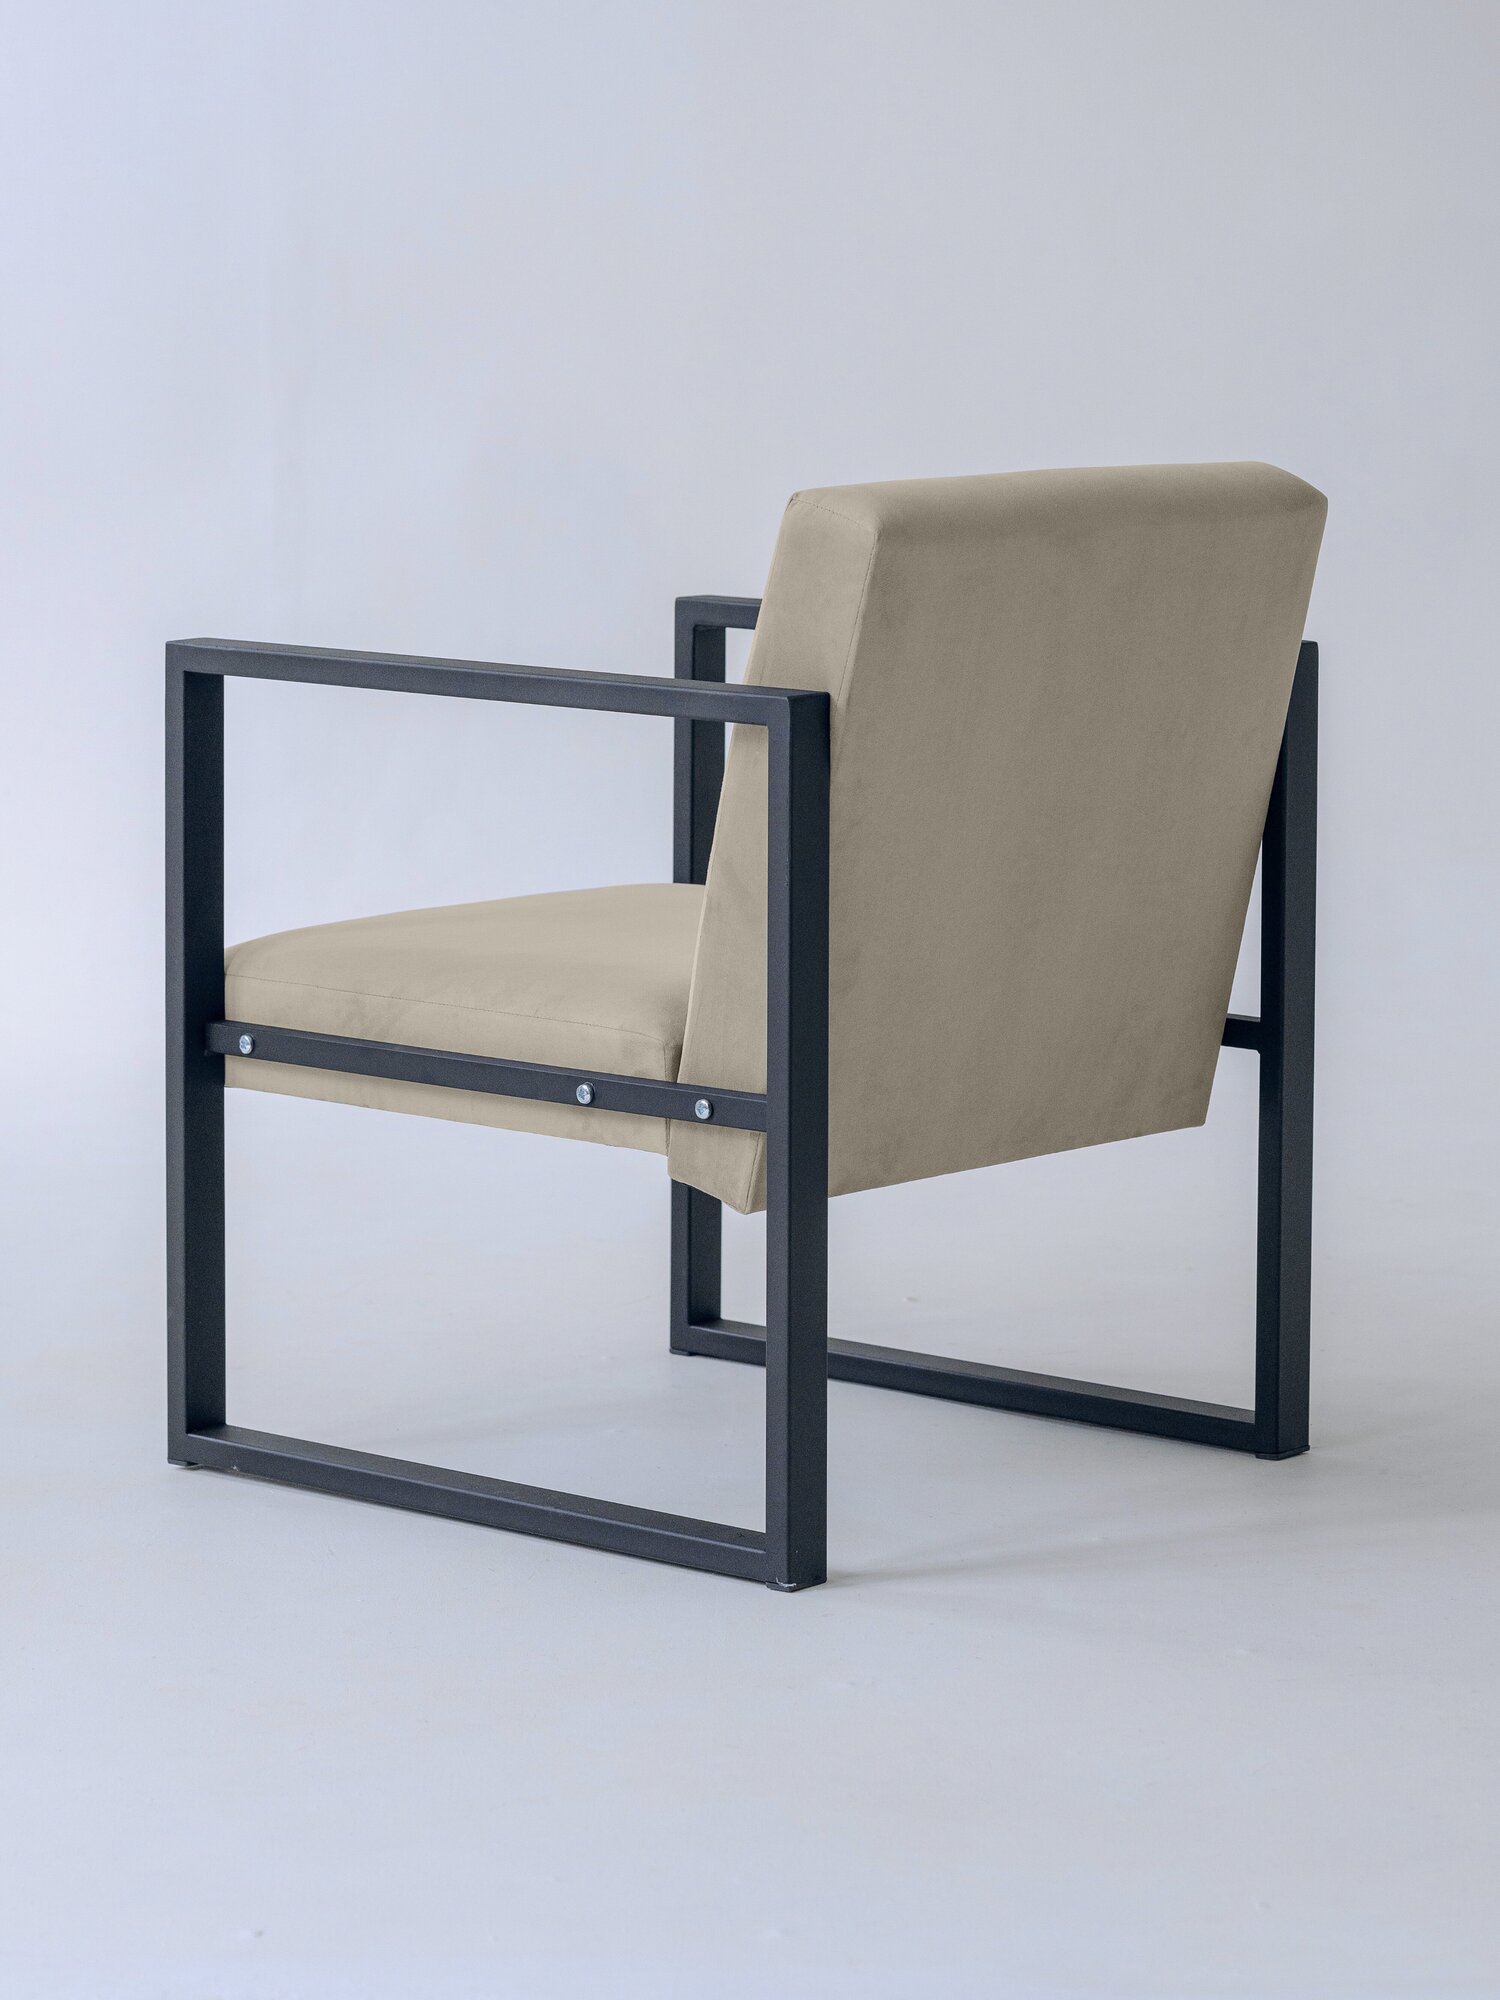 Кресло лофт Abyssinian 70х70, обивка: велюр, цвет: бежевый в гостиную, офис, кафе, холл, зал ожидания, на кухню - фотография № 4